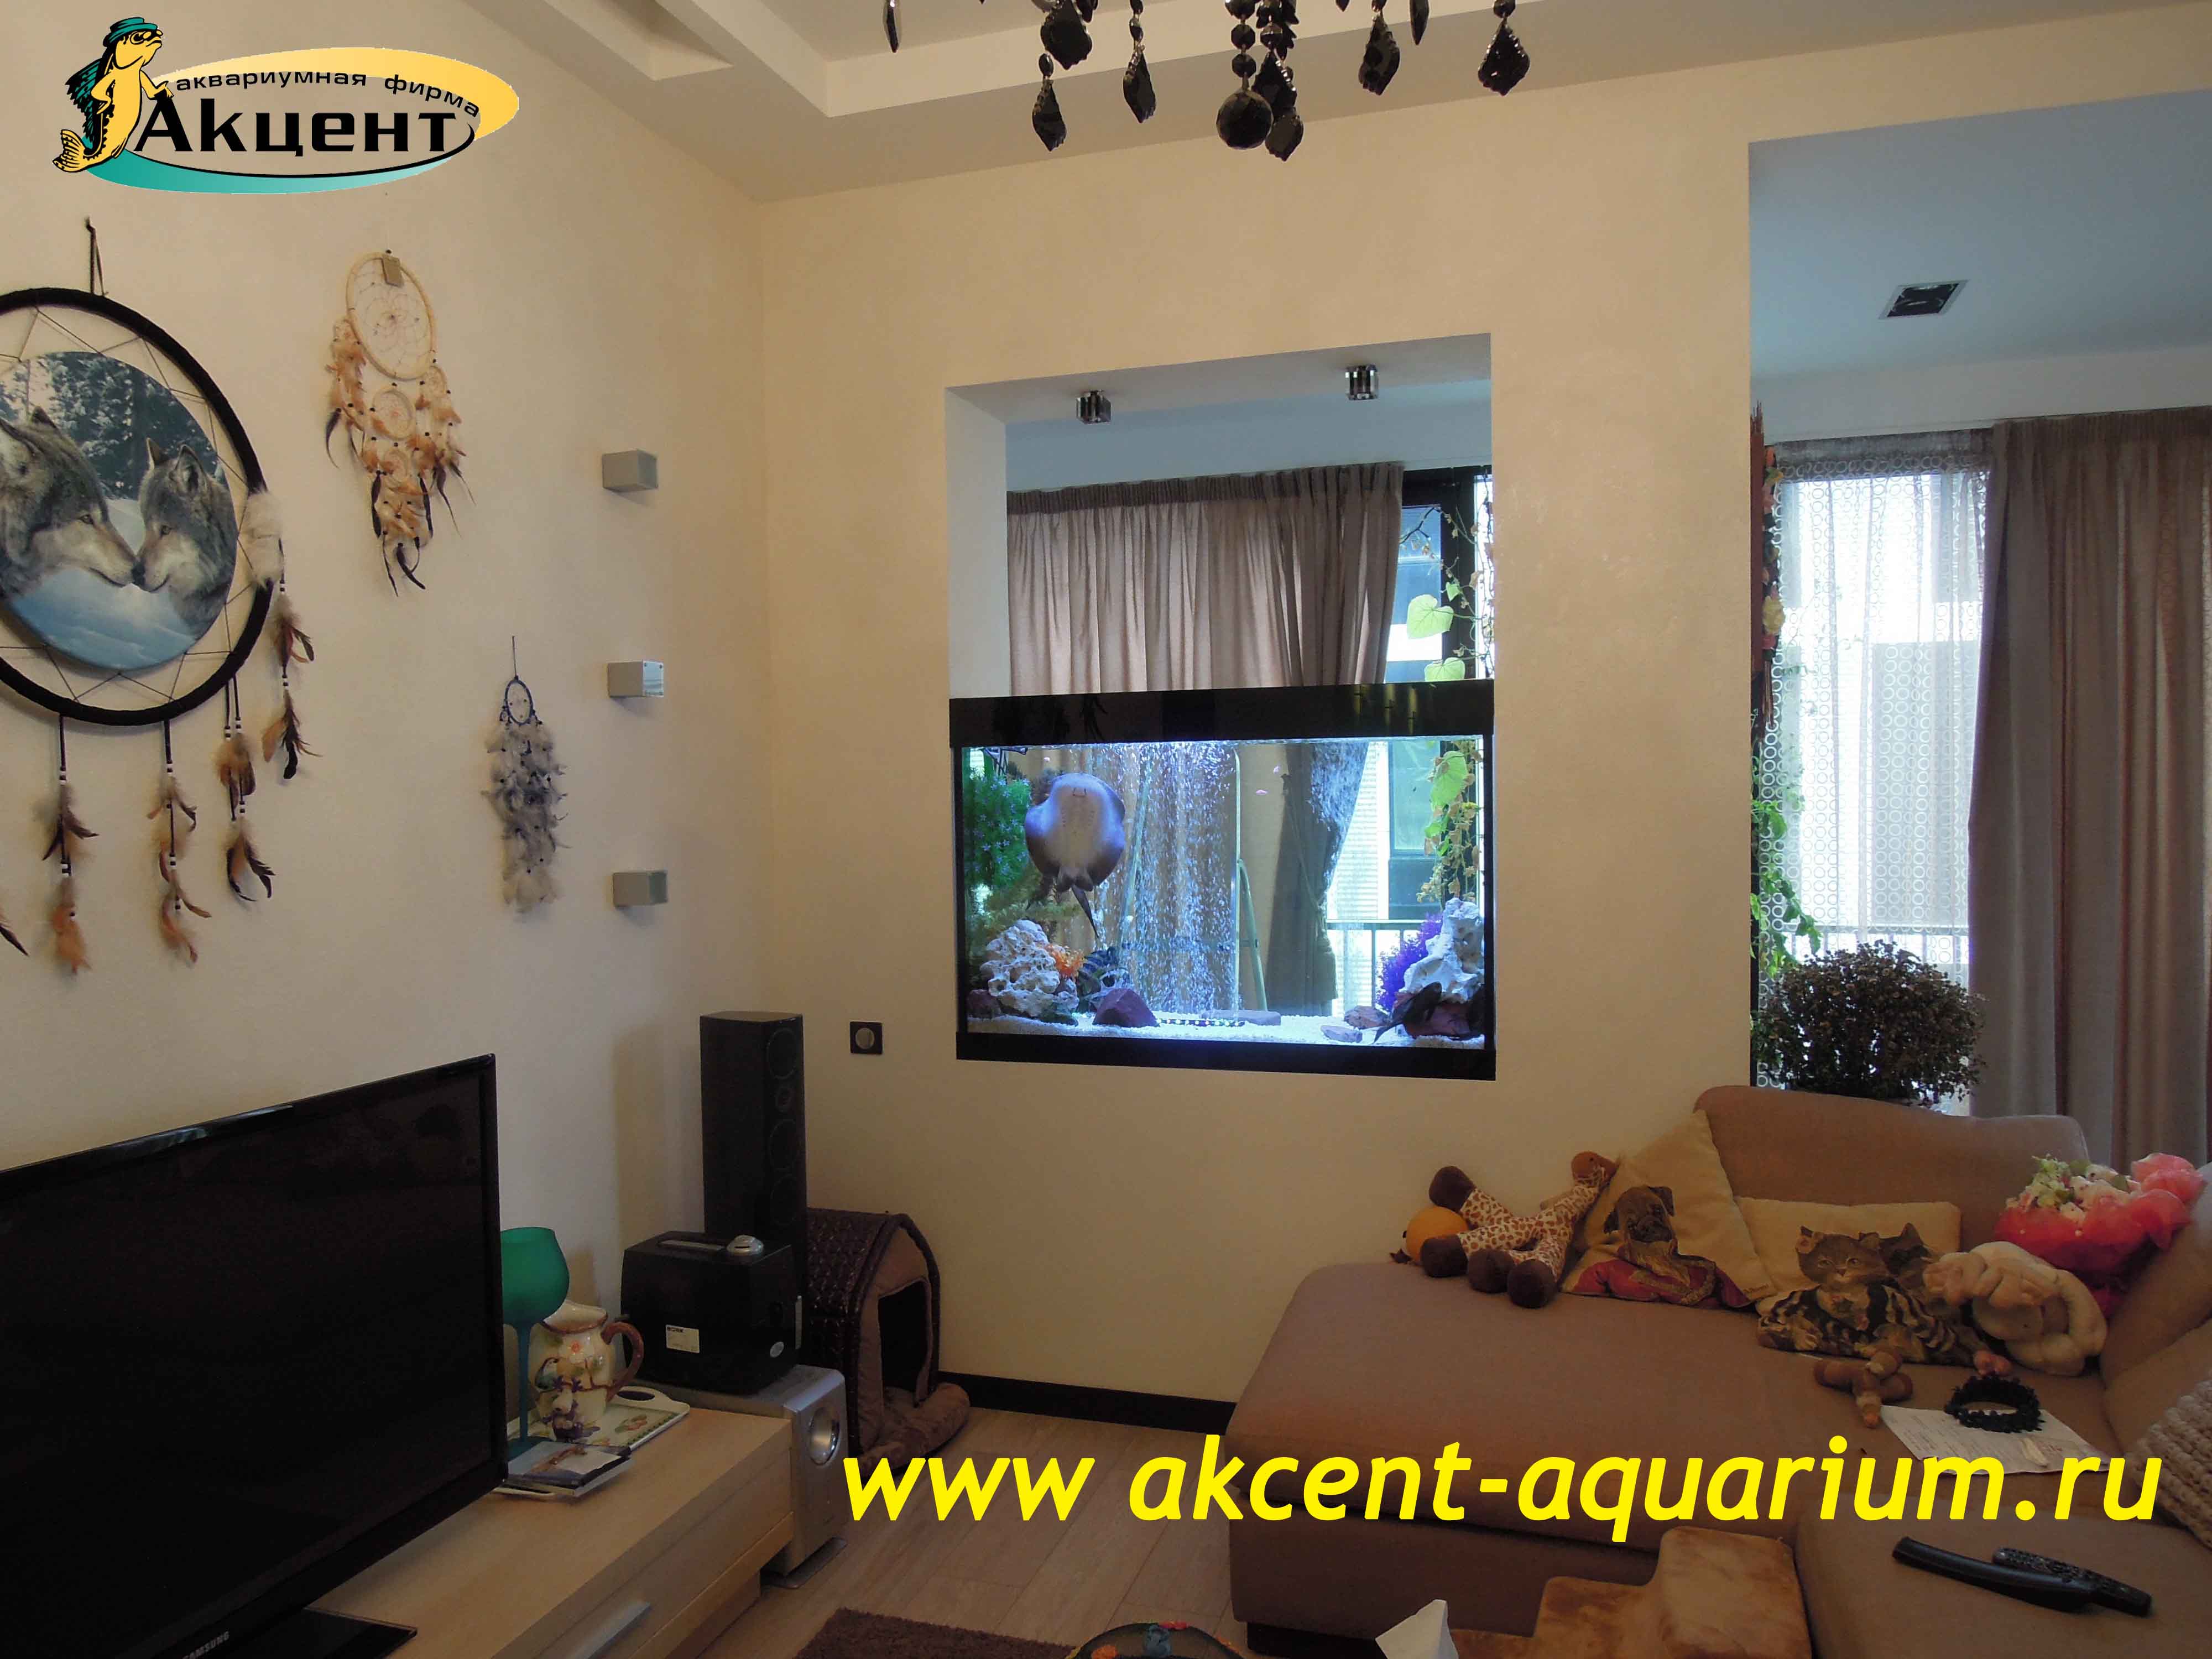 Акцент-аквариум,морской аквариум 400 литров встроенный в стену, вид со стороны гостиной